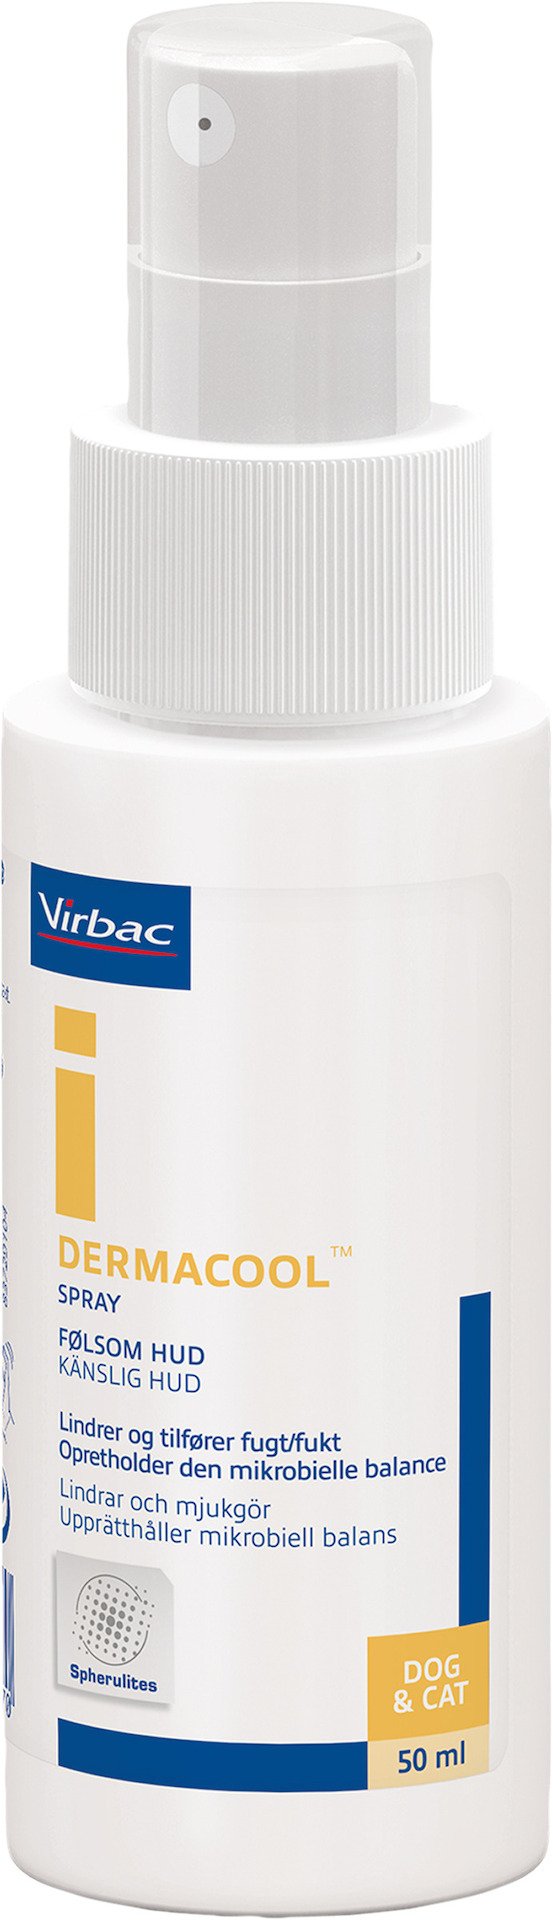 Virbac Dermacool 50 ml